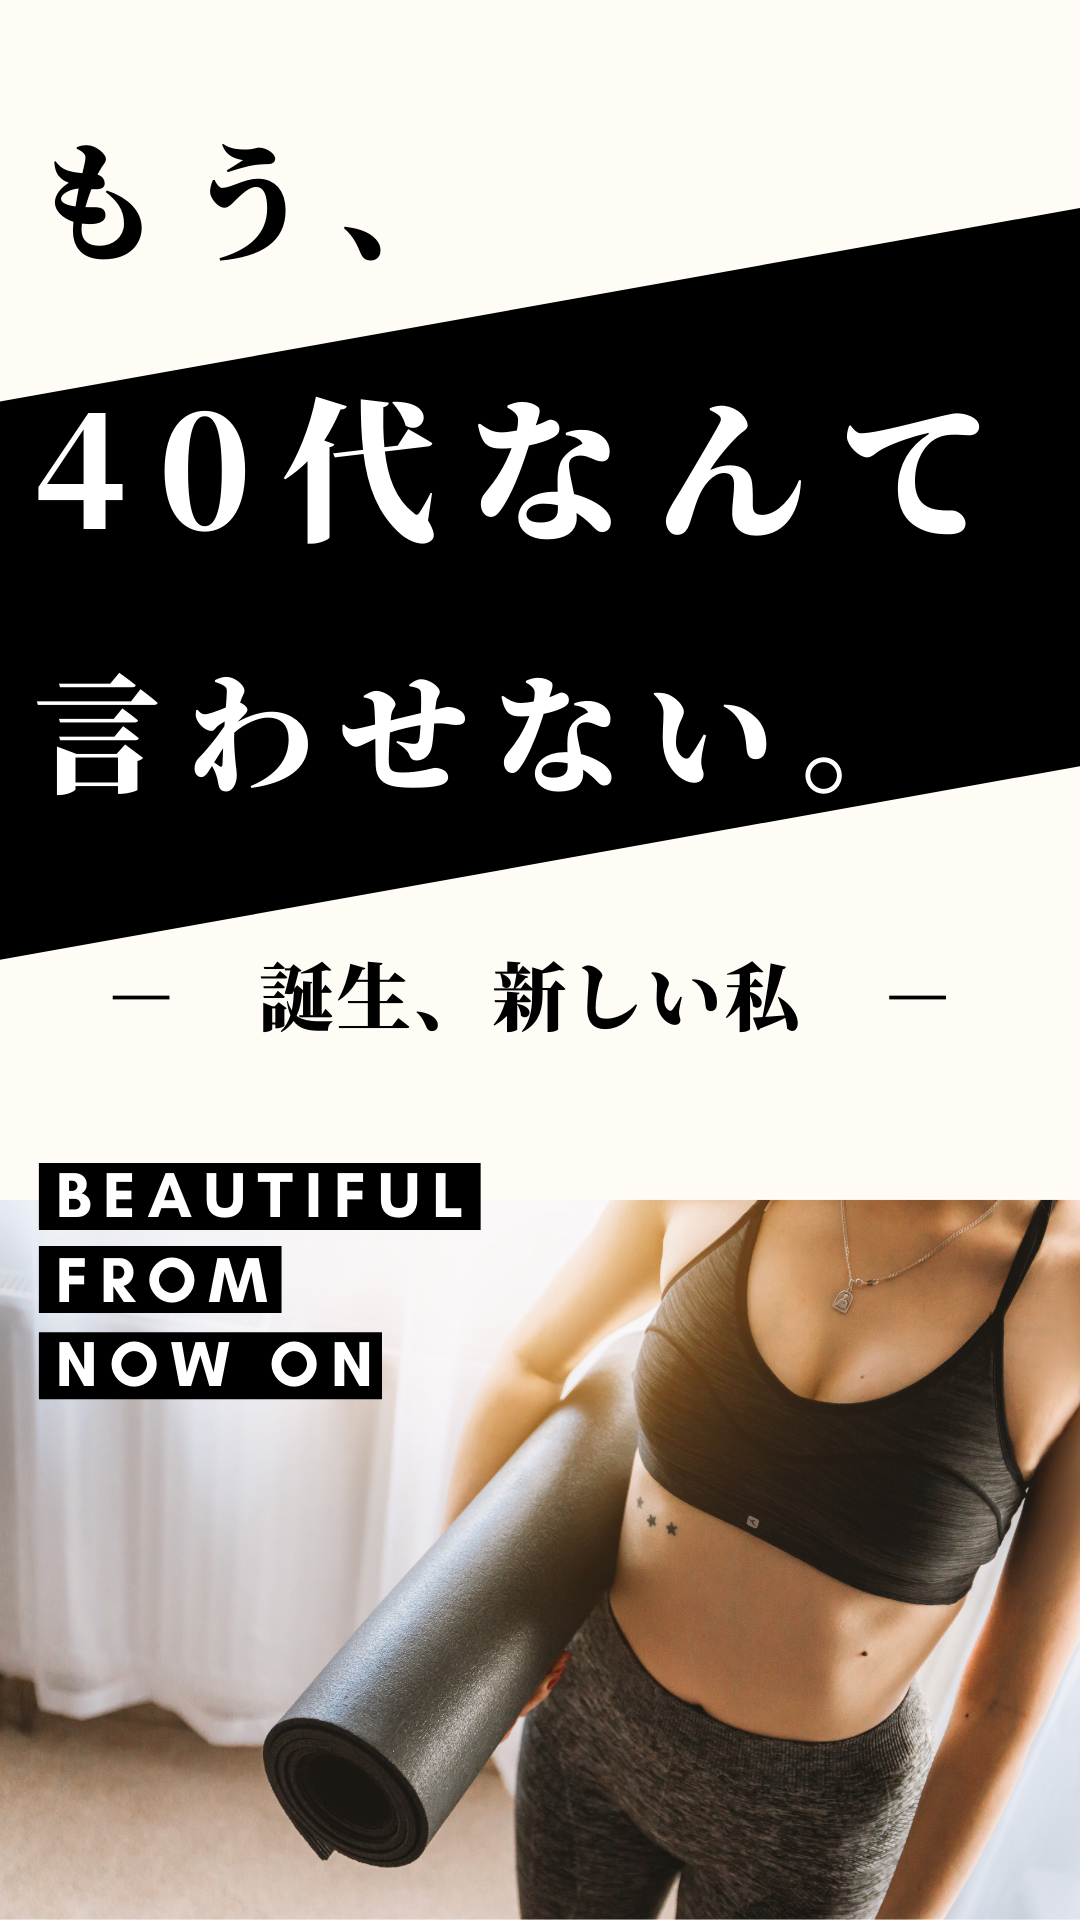 ブログ 40代女性のボディメイク ダイエットならap Condtioning 大阪のパーソナルトレーニングジム